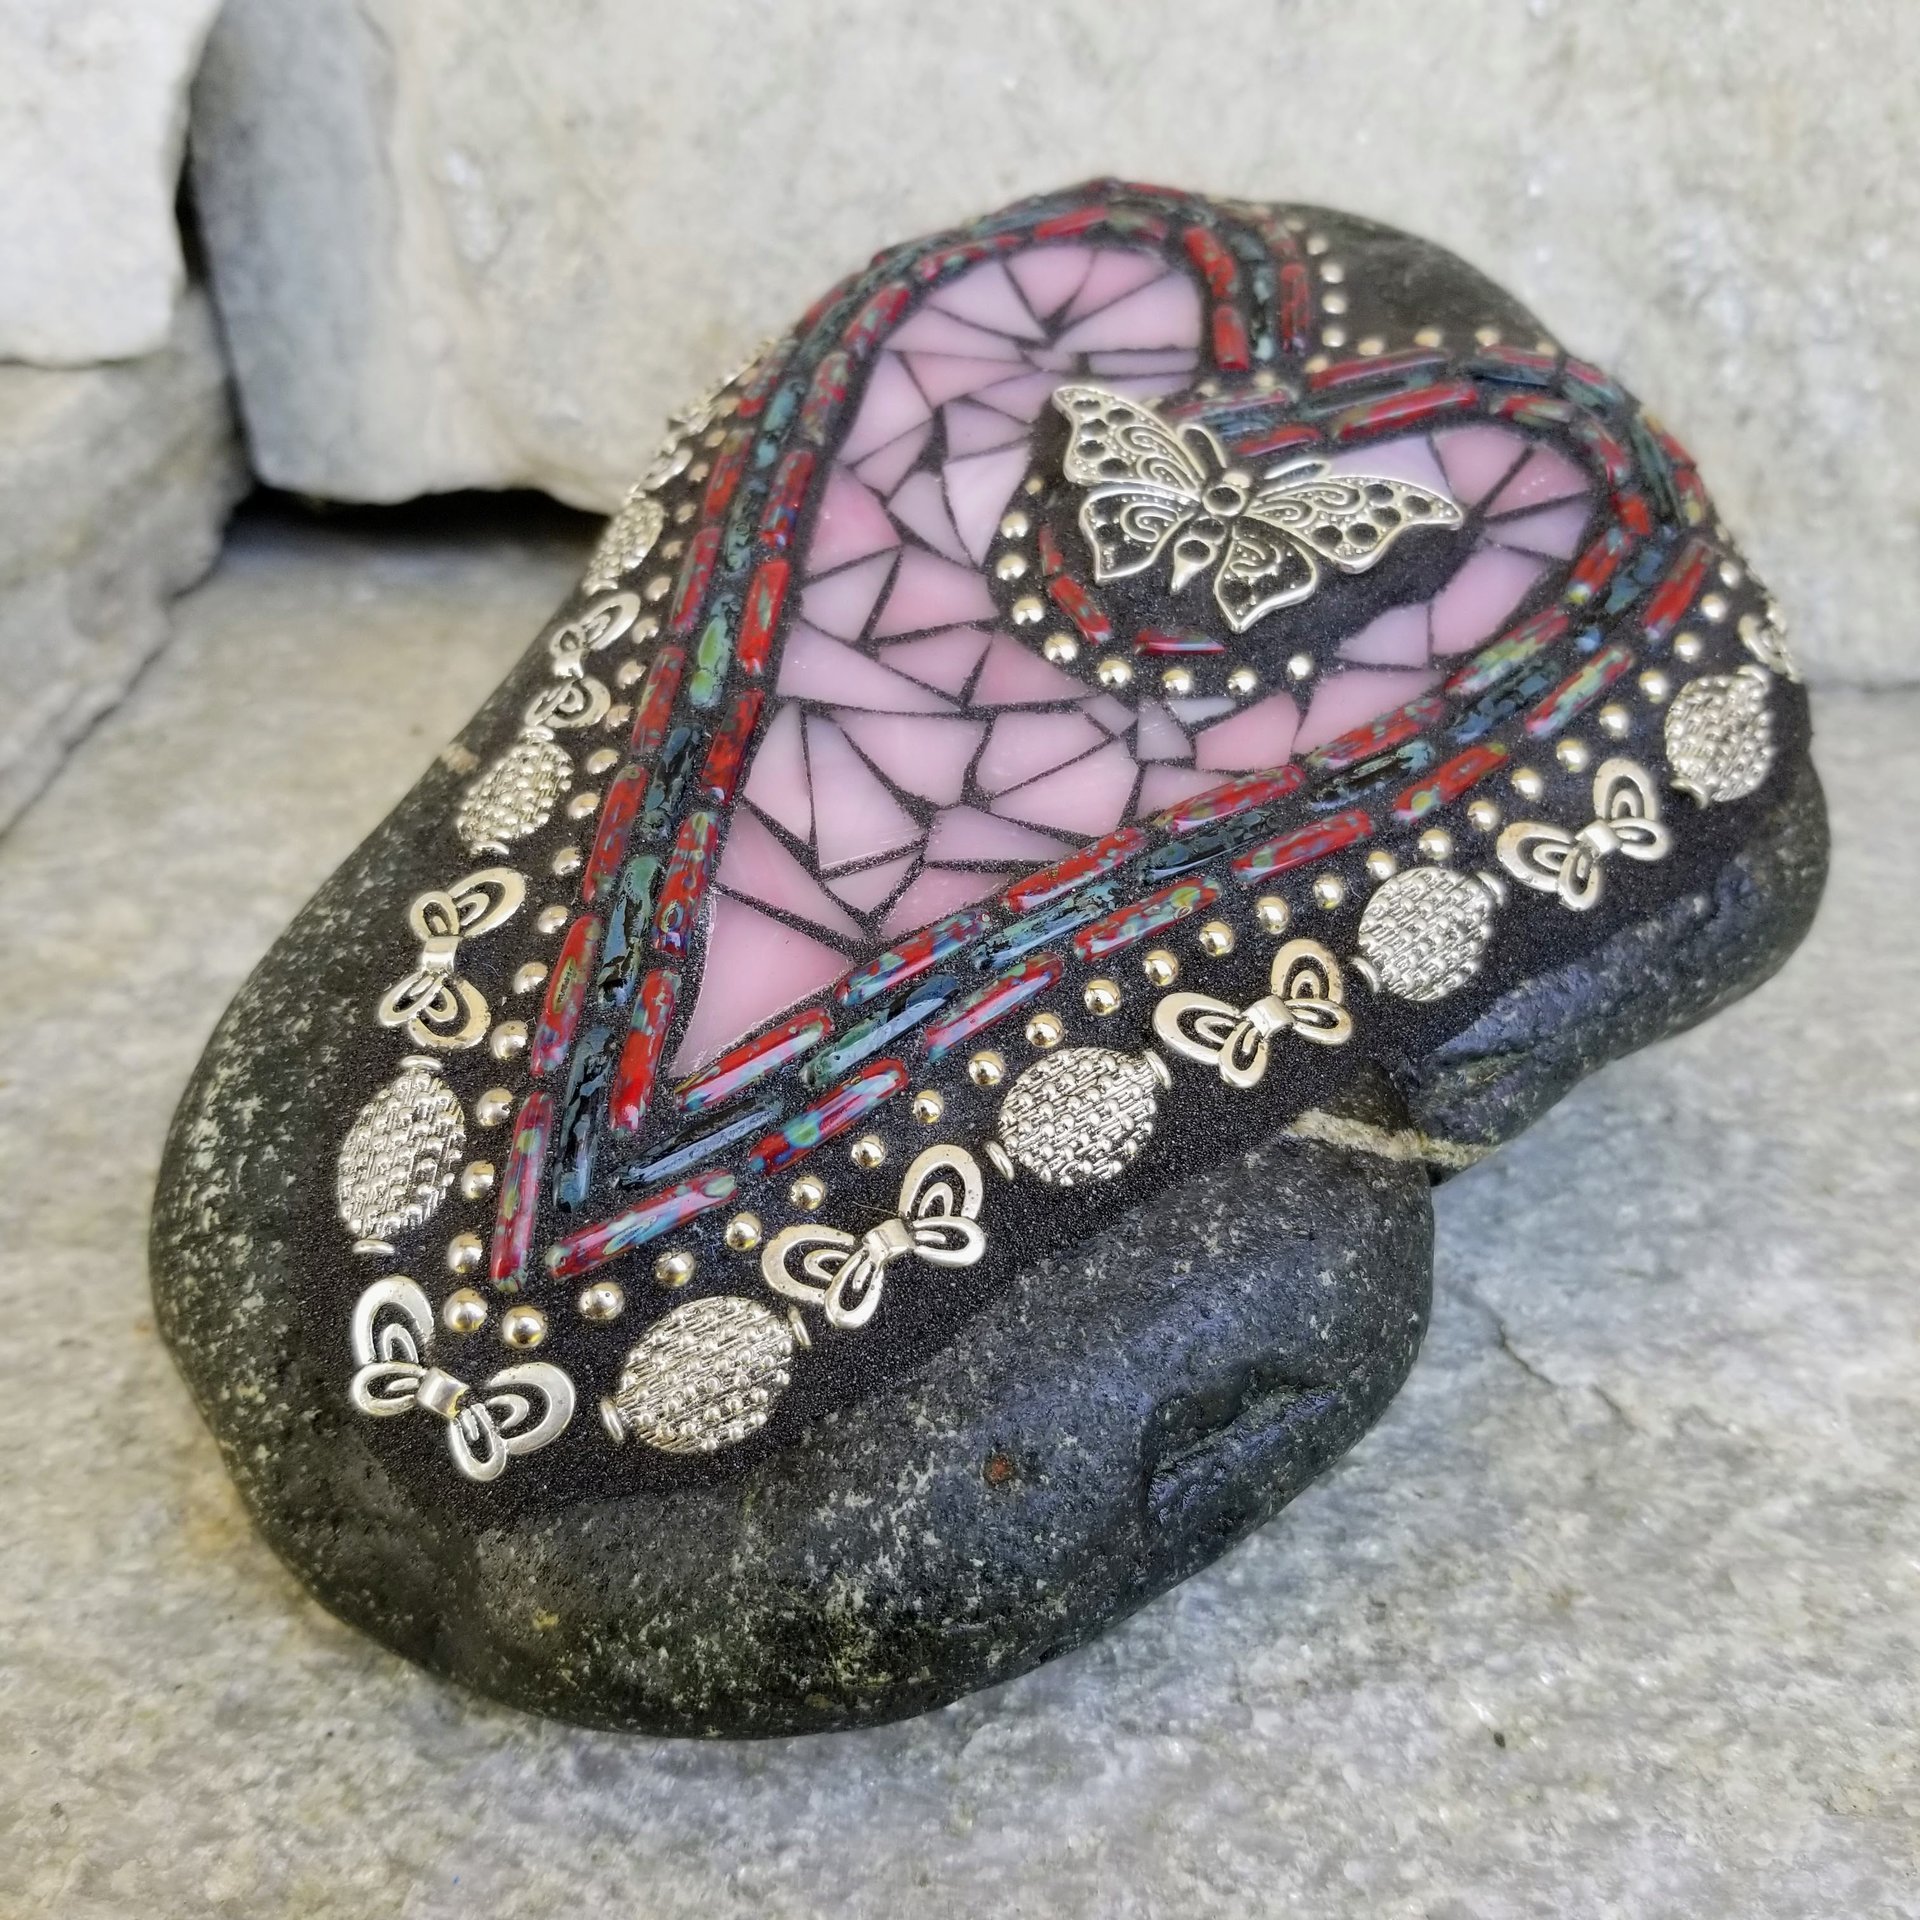 Pink Heart with Butterflies Mosaic Garden Stone